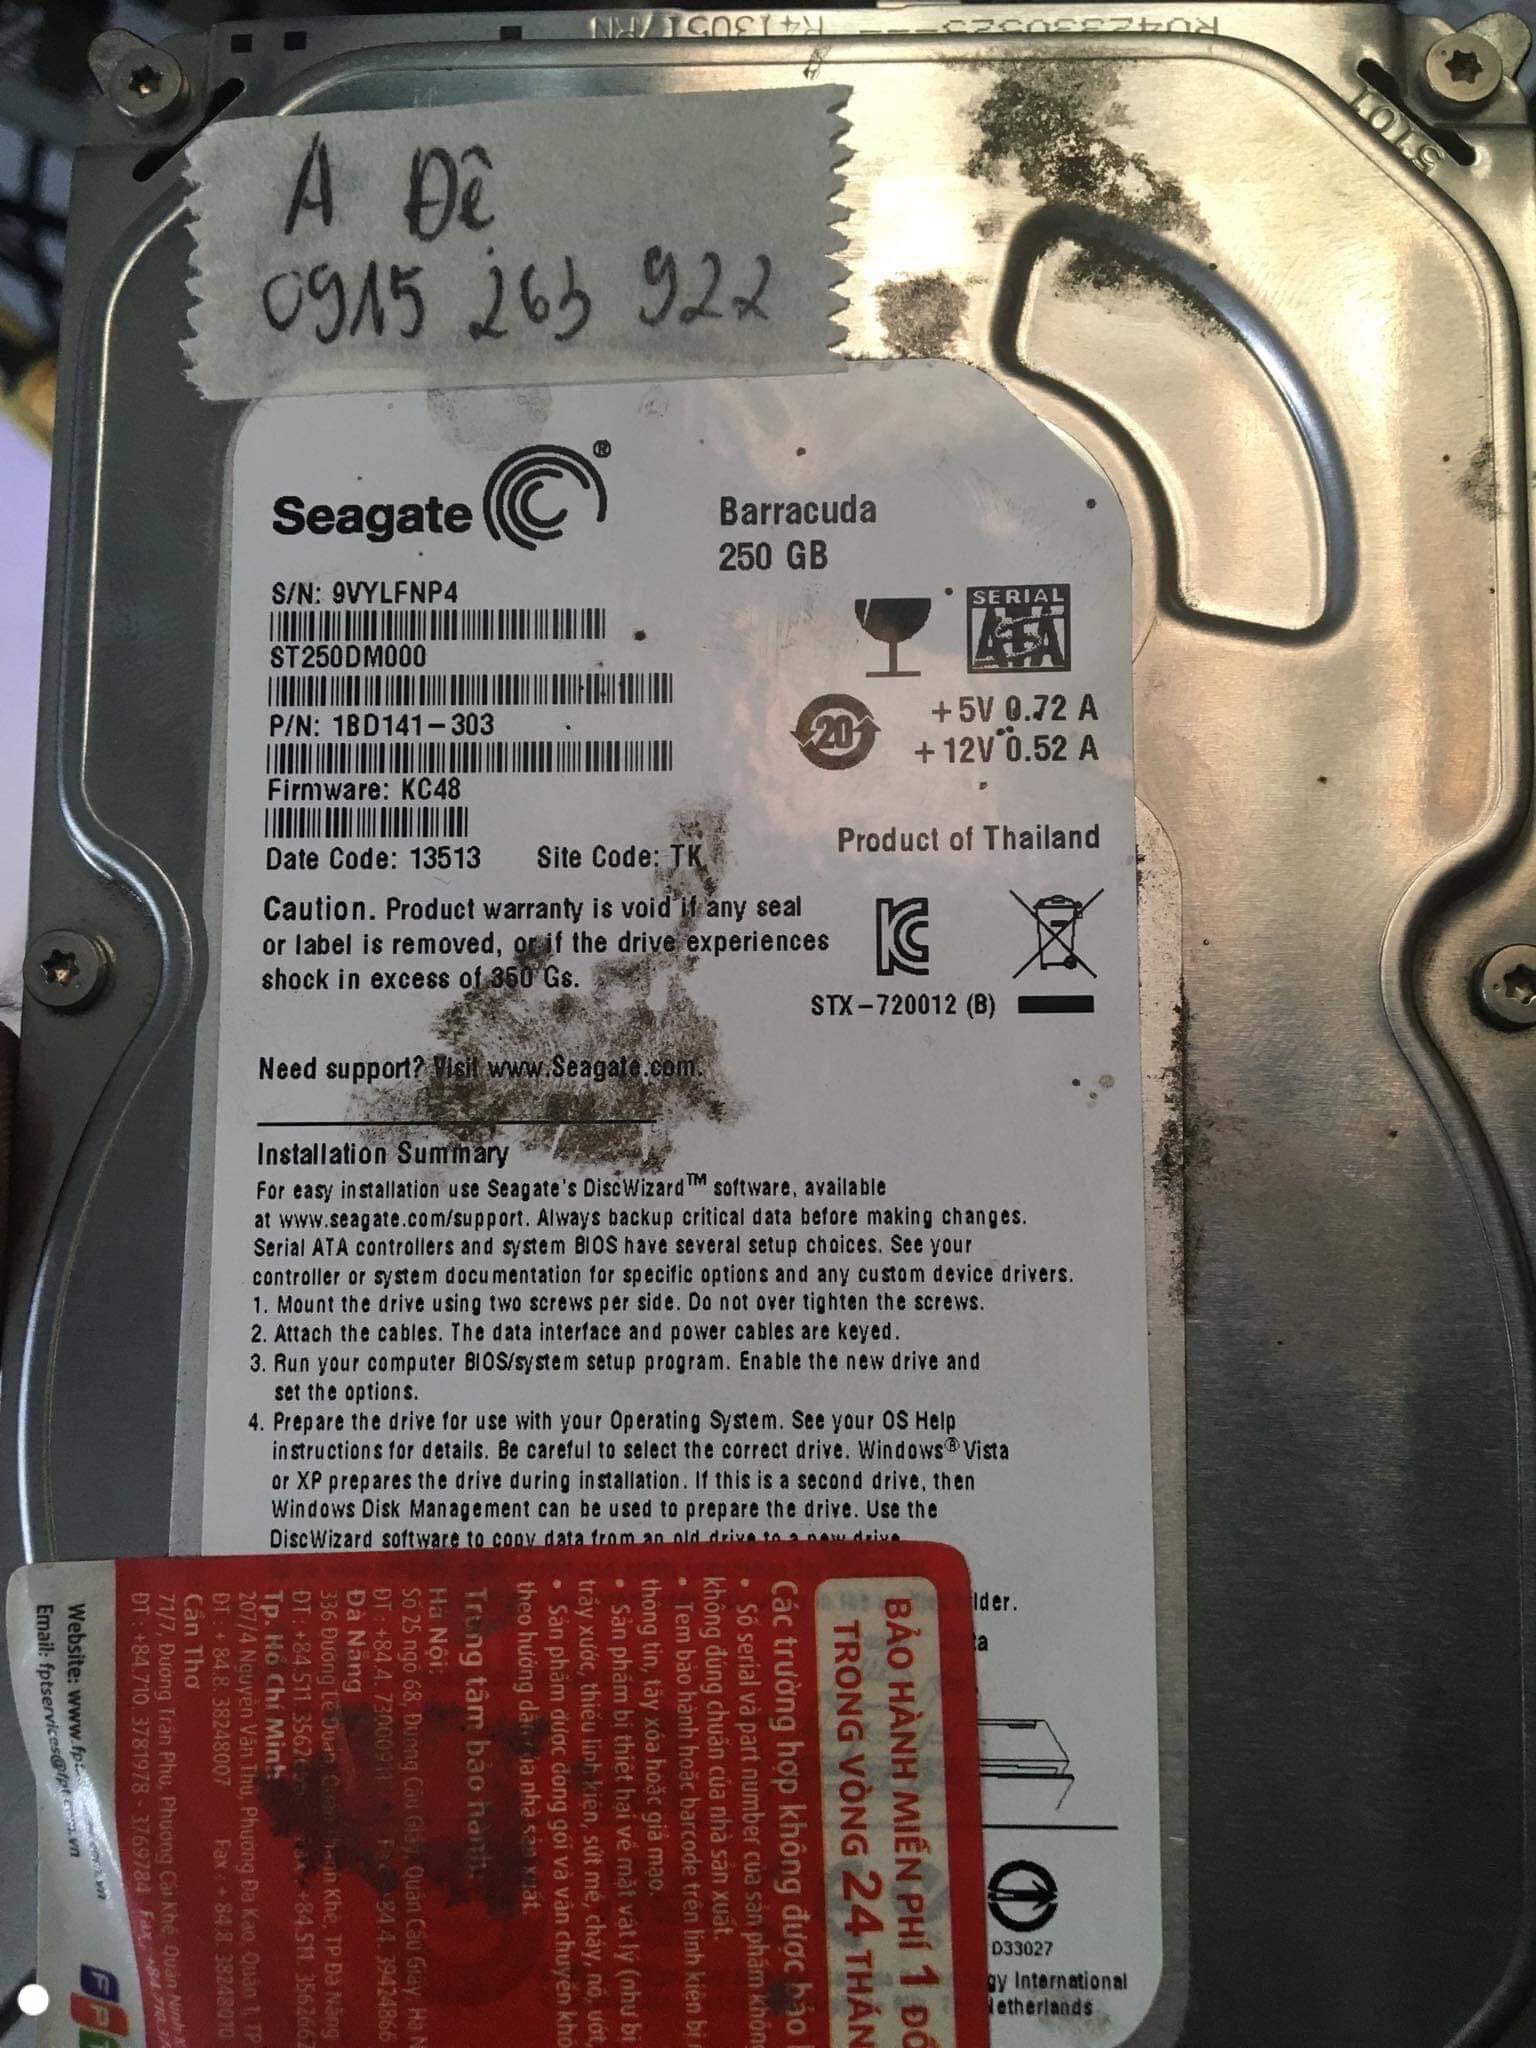 Phục hồi dữ liệu ổ cứng Seagate 250GB lỗi đầu đọc 12/11/2019 - cuumaytinh